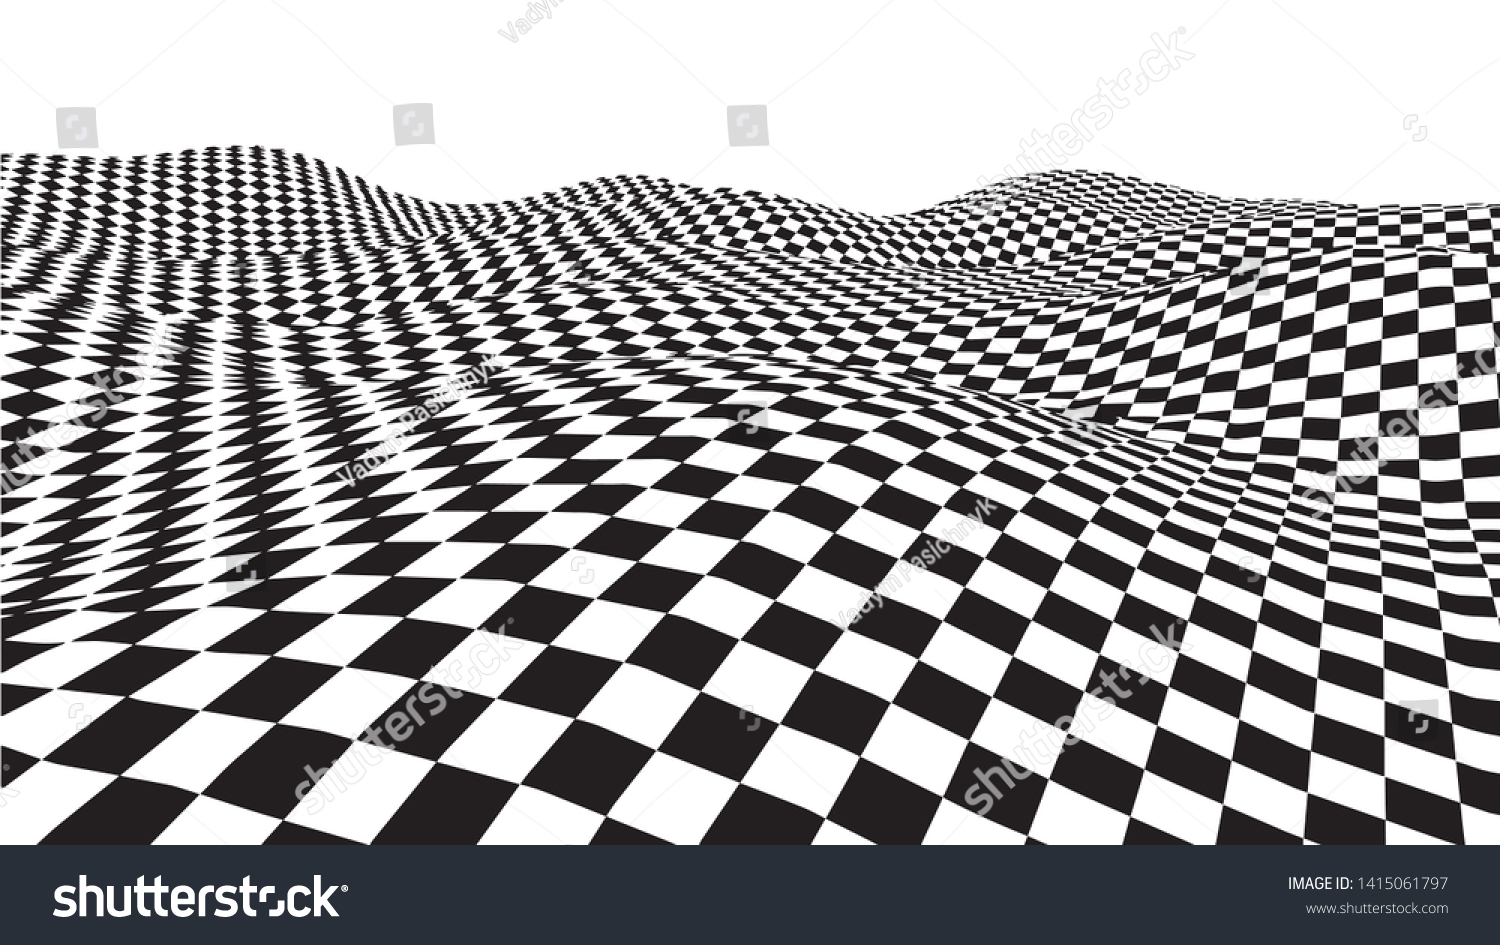 錯視波 チェスの波板 抽象的な3d白黒のイラスト 波状の歪み効果を持つ 横線の縞模様または背景 ベクターイラスト のベクター画像素材 ロイヤリティ フリー